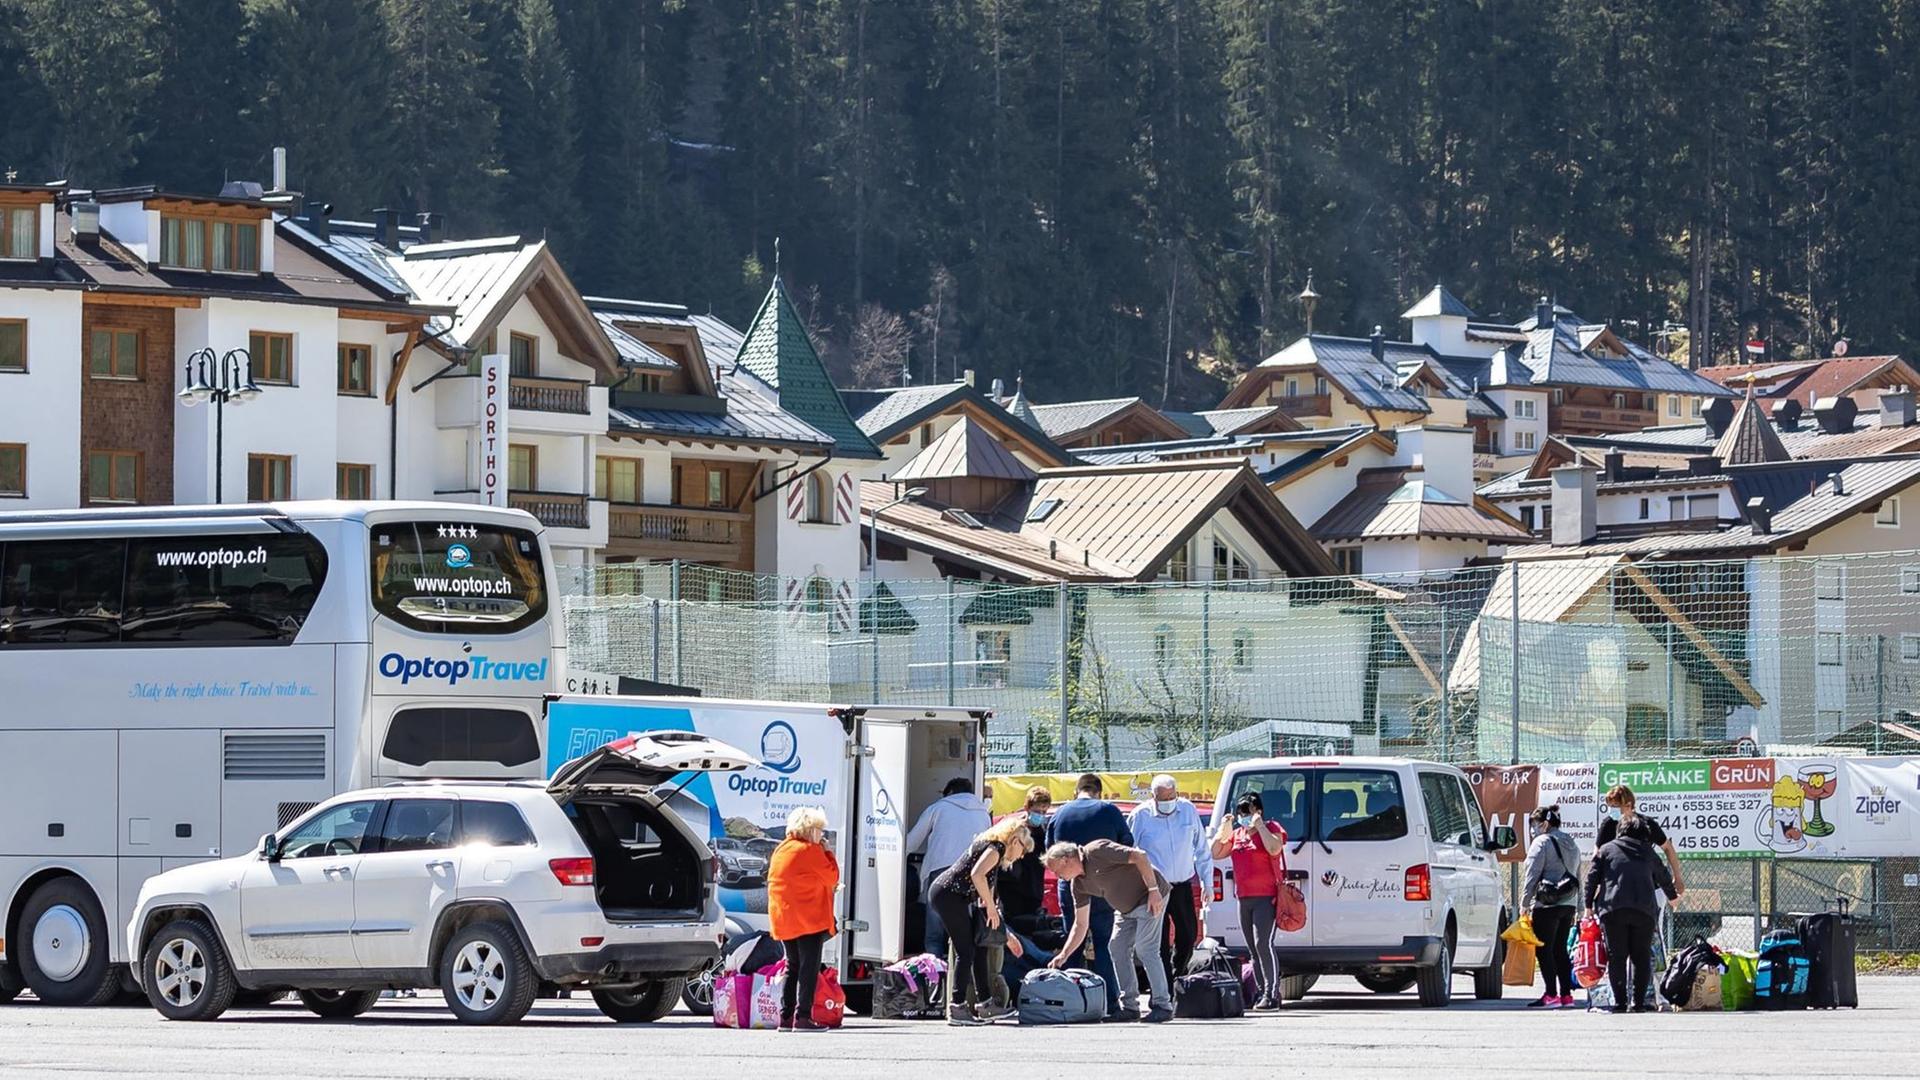 Eine Gruppe von Menschen ist mit Gepäck an einem Parkplatz um Autos und einen Bus versammelt, im Hintergrund ist die Häuswersilhouette von Ischgl zu sehen.